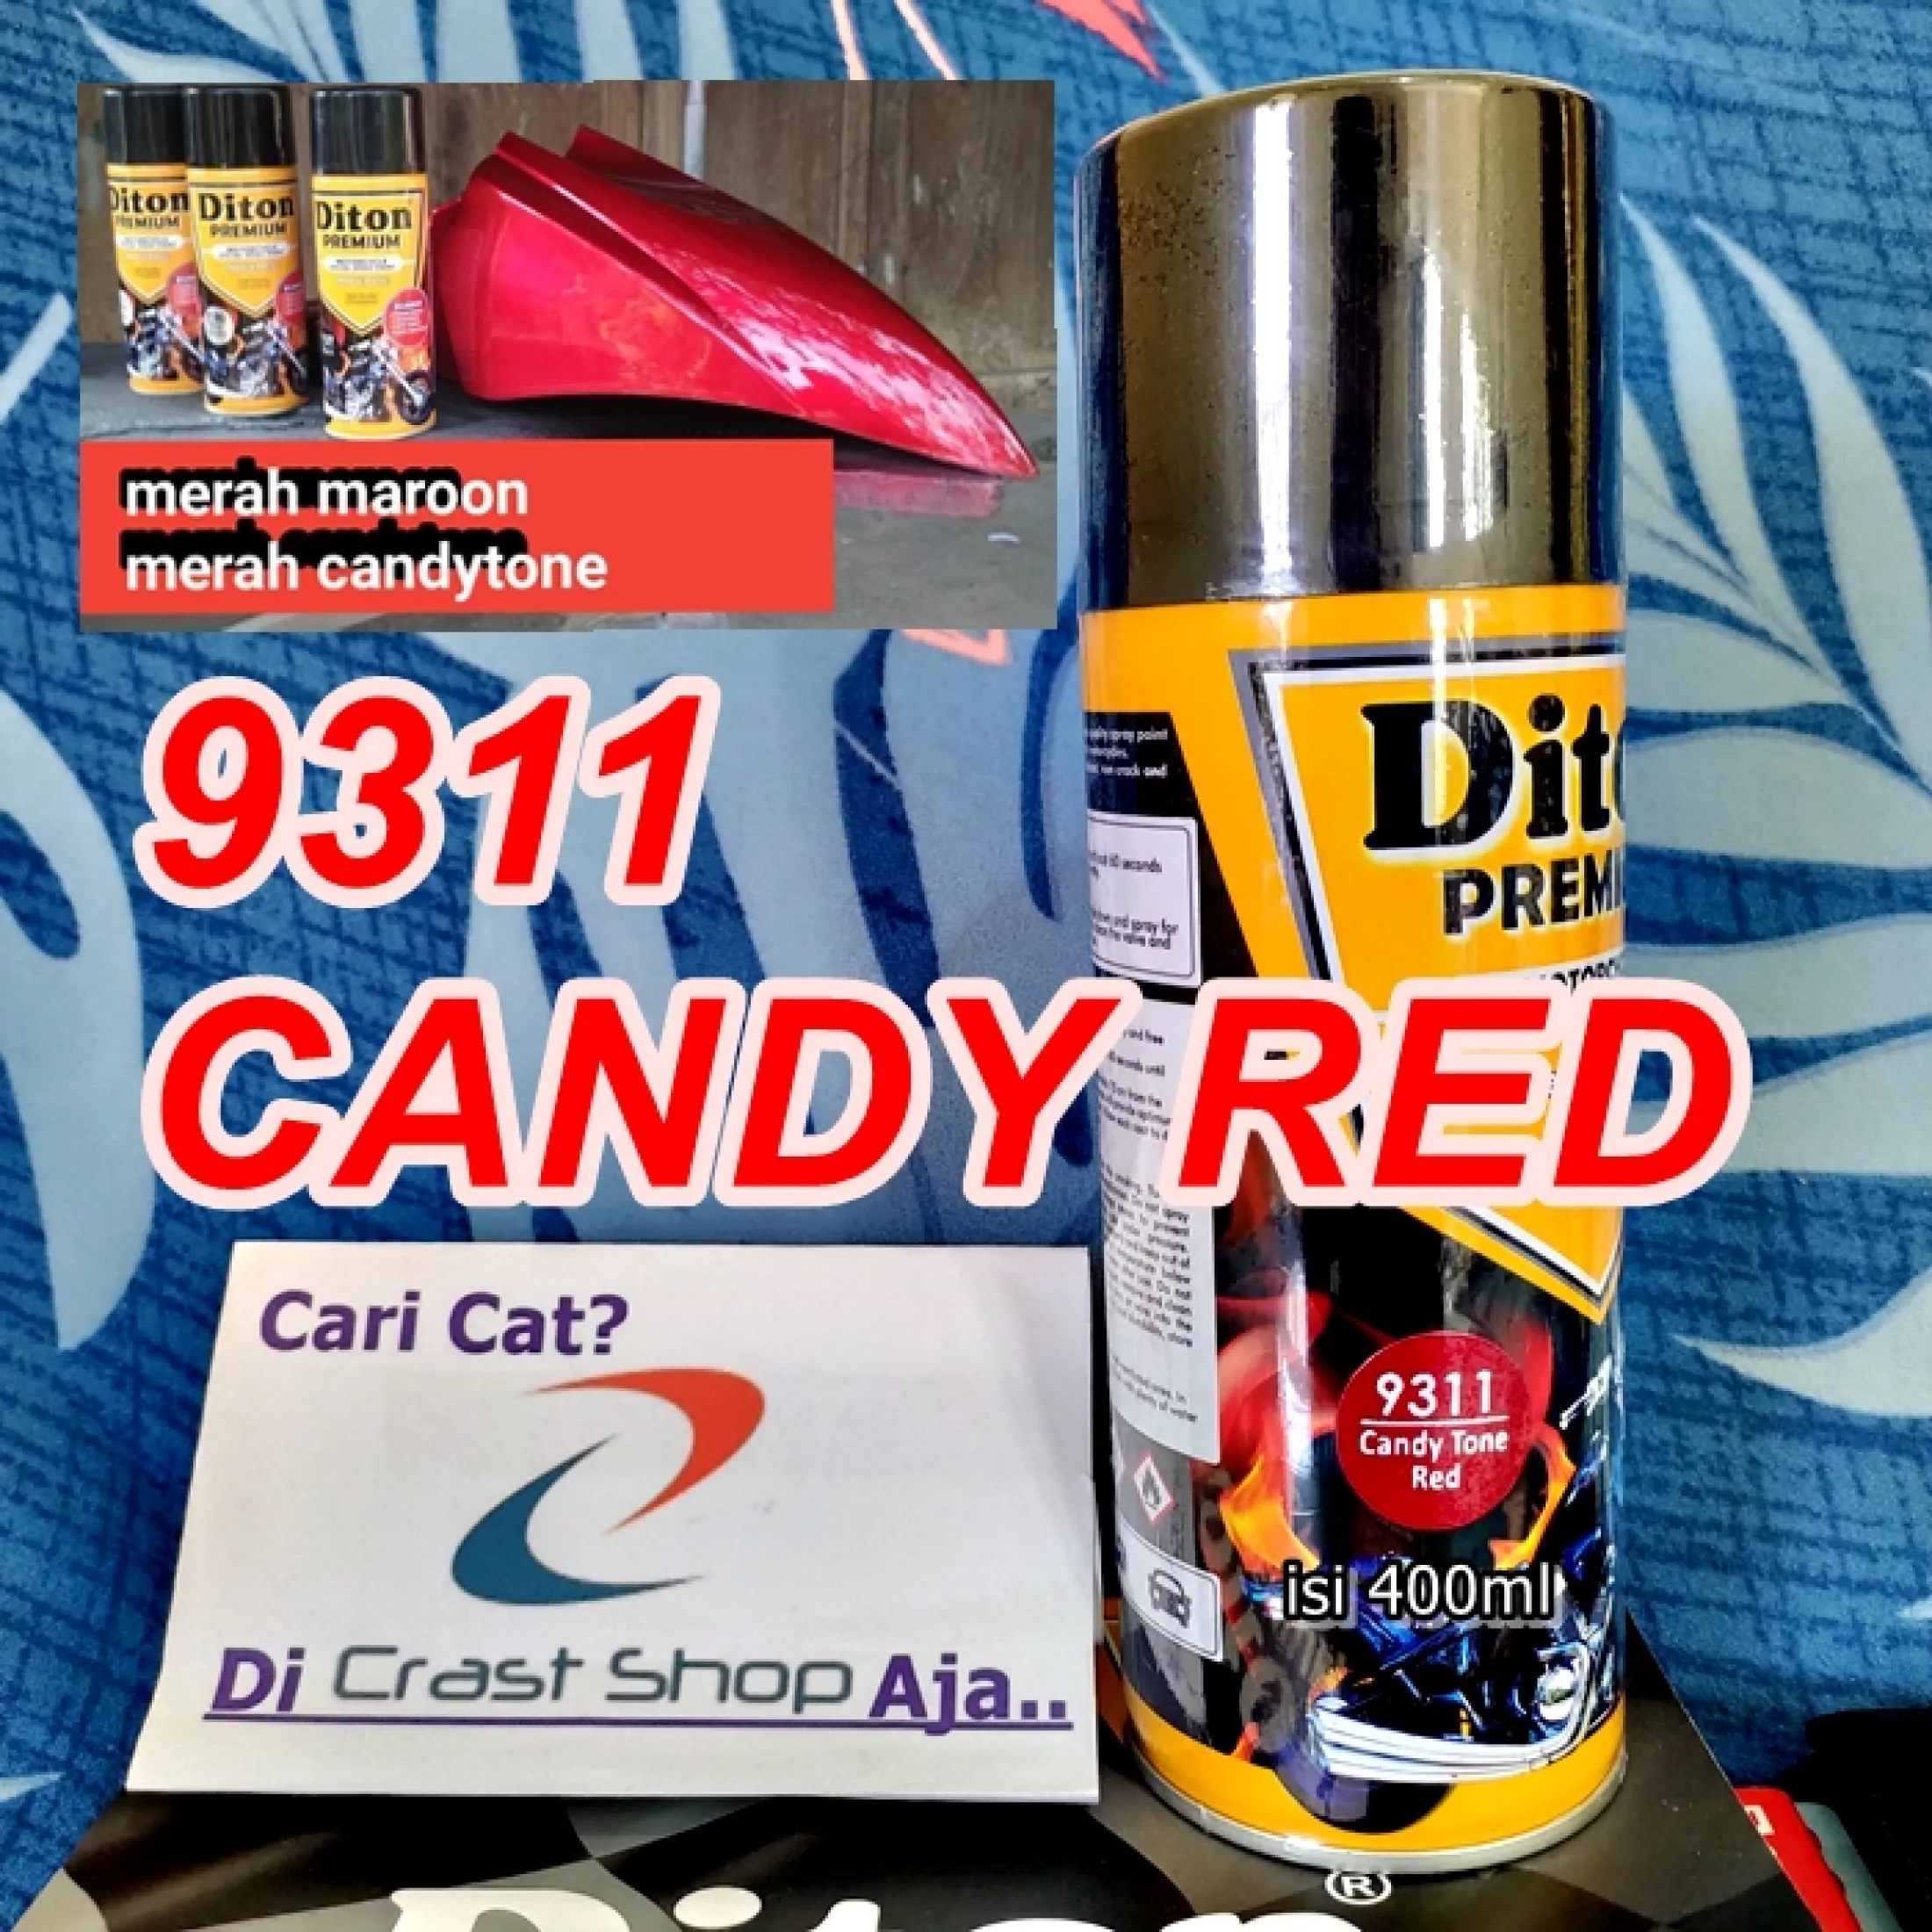 Cat Pilox Diton Premium Candy Tone Red 9311 400ml Warna Kendi Cendi Cendy Kendy Merah Sepeda Motor Mobil Helm Mesin Velg Bodi Pilok Pylok Pylox Free Packing Bubble Wrap Dus Bisa Cod